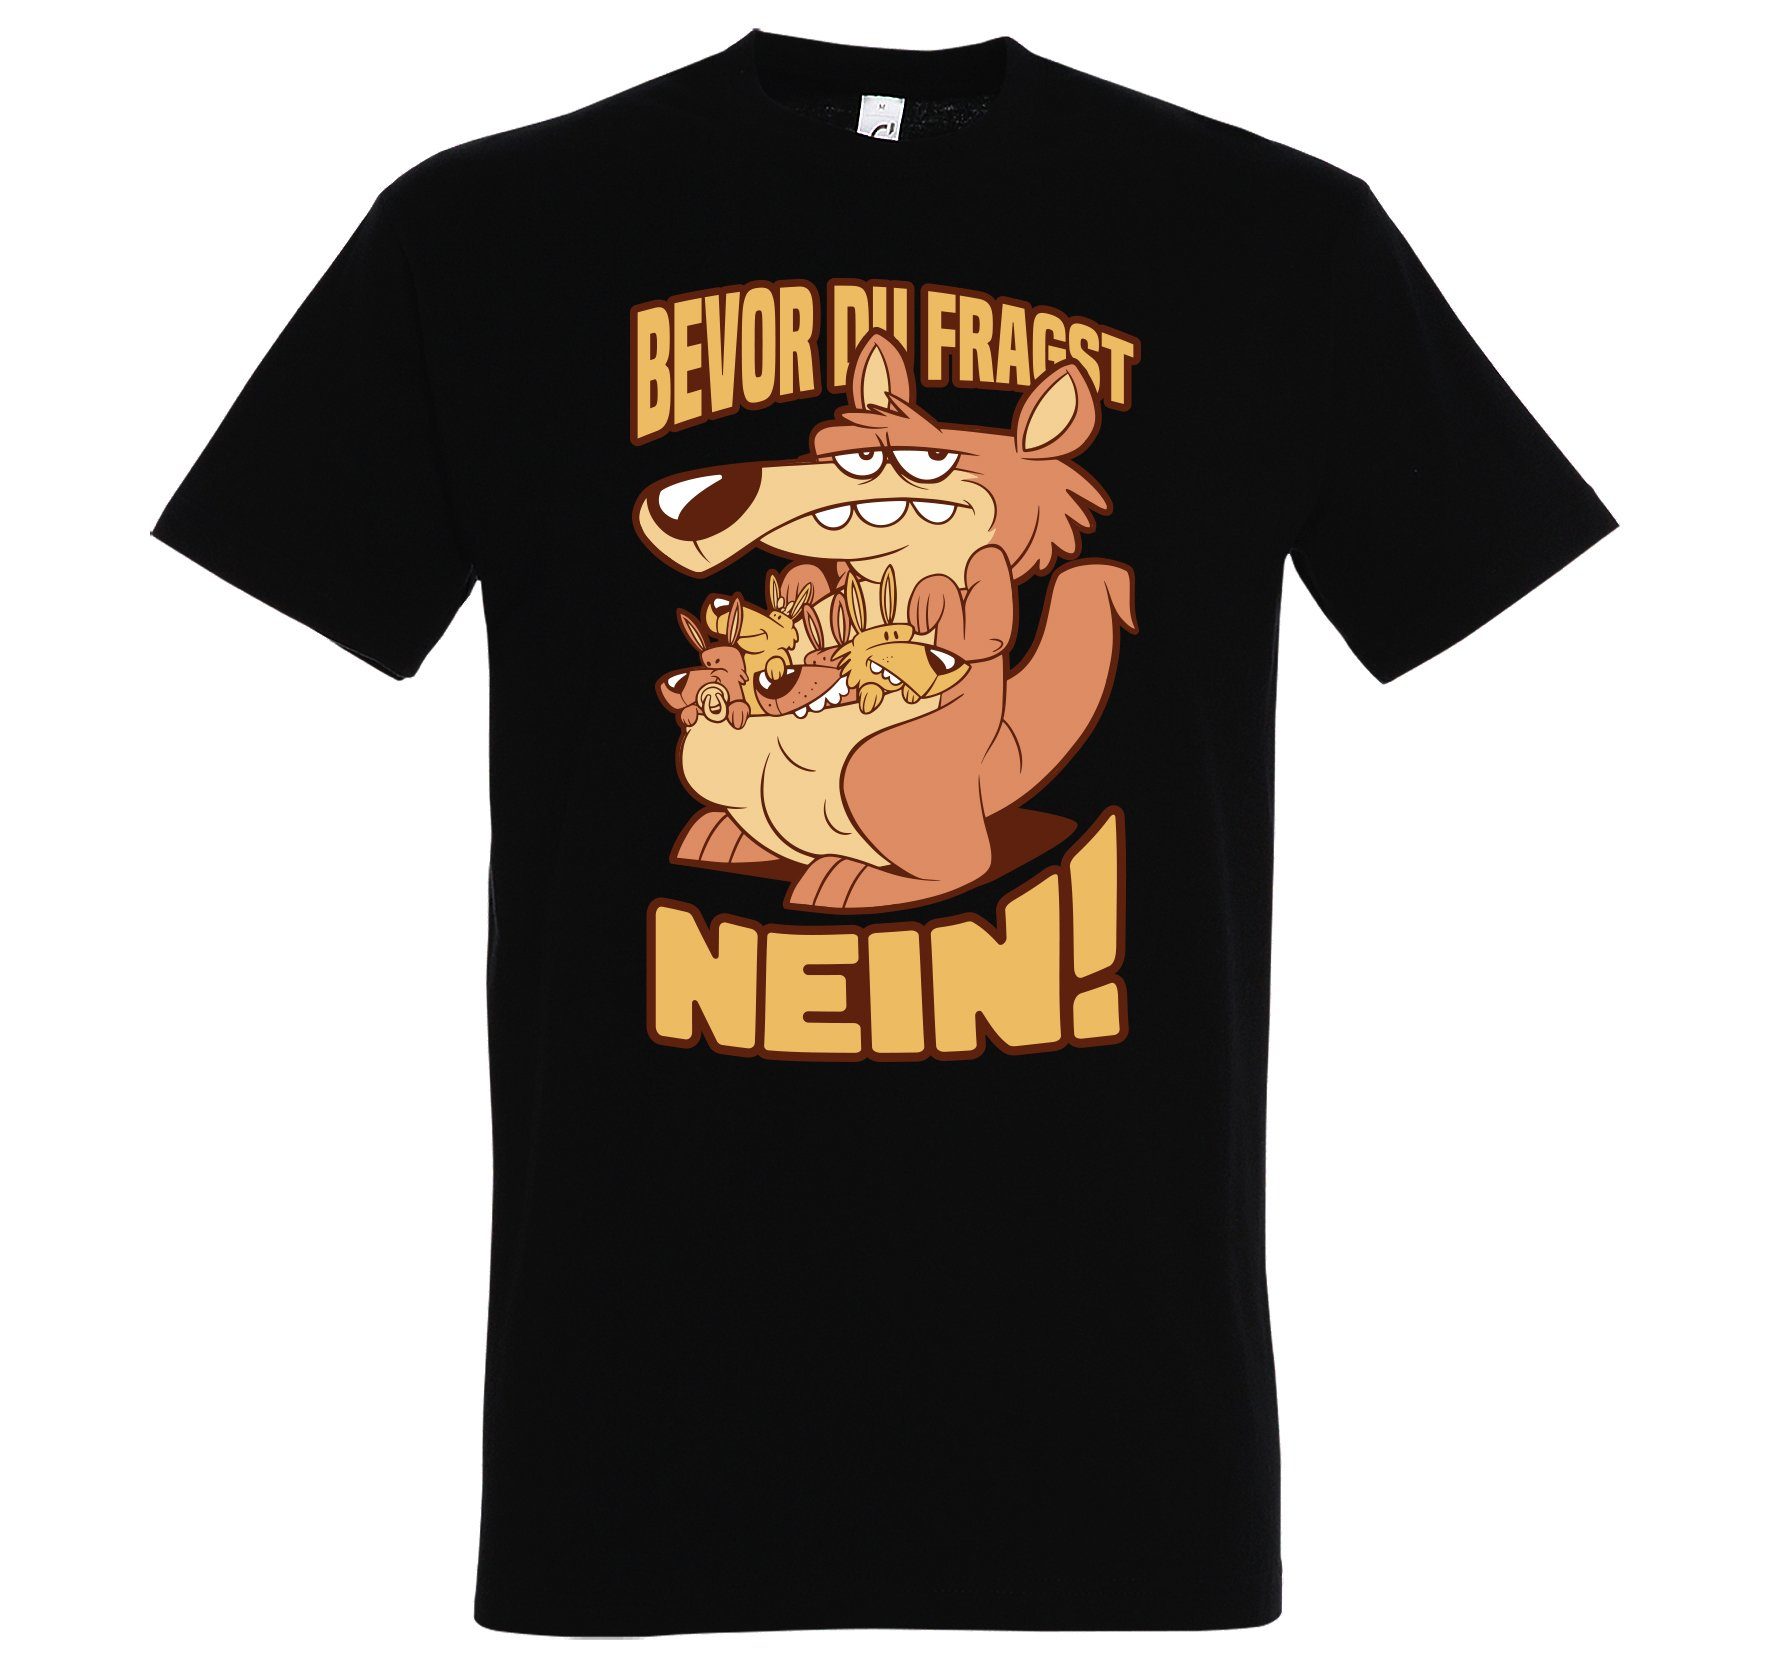 Print-Shirt BEVOR mit Youth DU Spruch Herren FRAGST T-Shirt lustigem Designz Aufdruck NEIN Schwarz